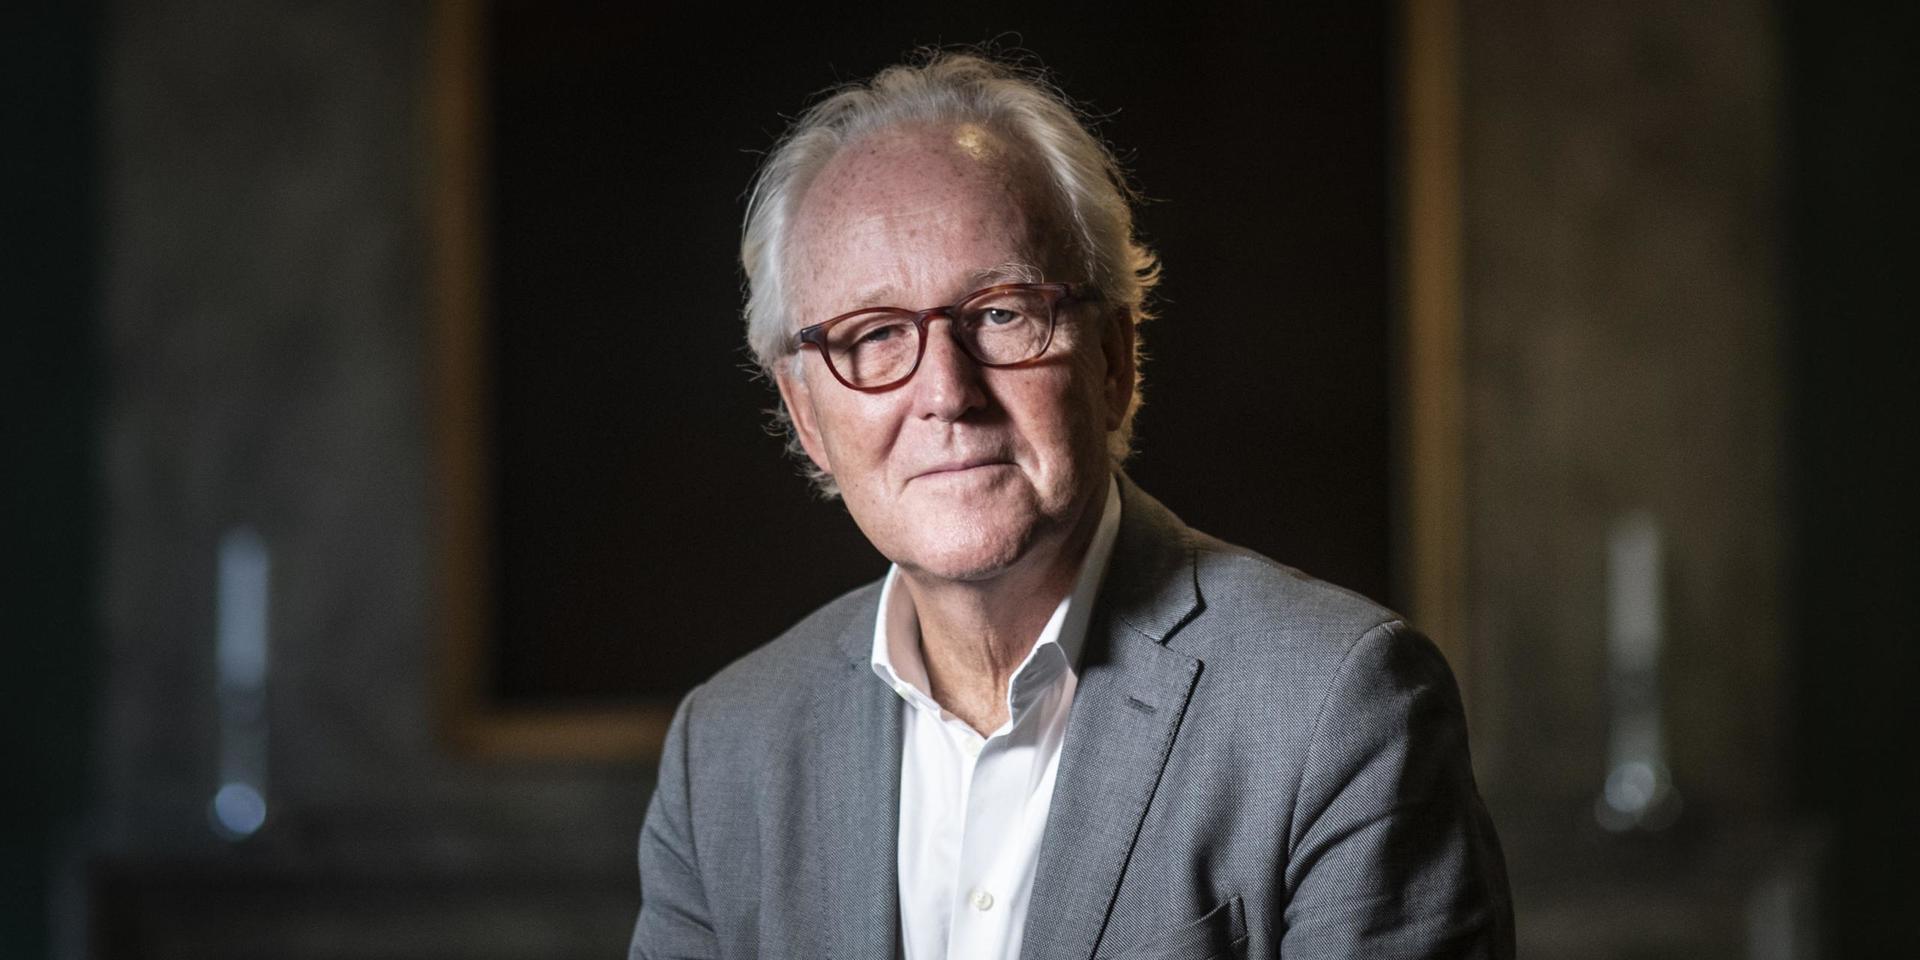 ”Det ska bli intressant att återknyta till det gamla”, säger Lars Heikensten om att gå tillbaka till nationalekonomin som ordförande i Finanspolitiska rådet. Nu fyller Nobelstiftelsens avgående vd 70 år.